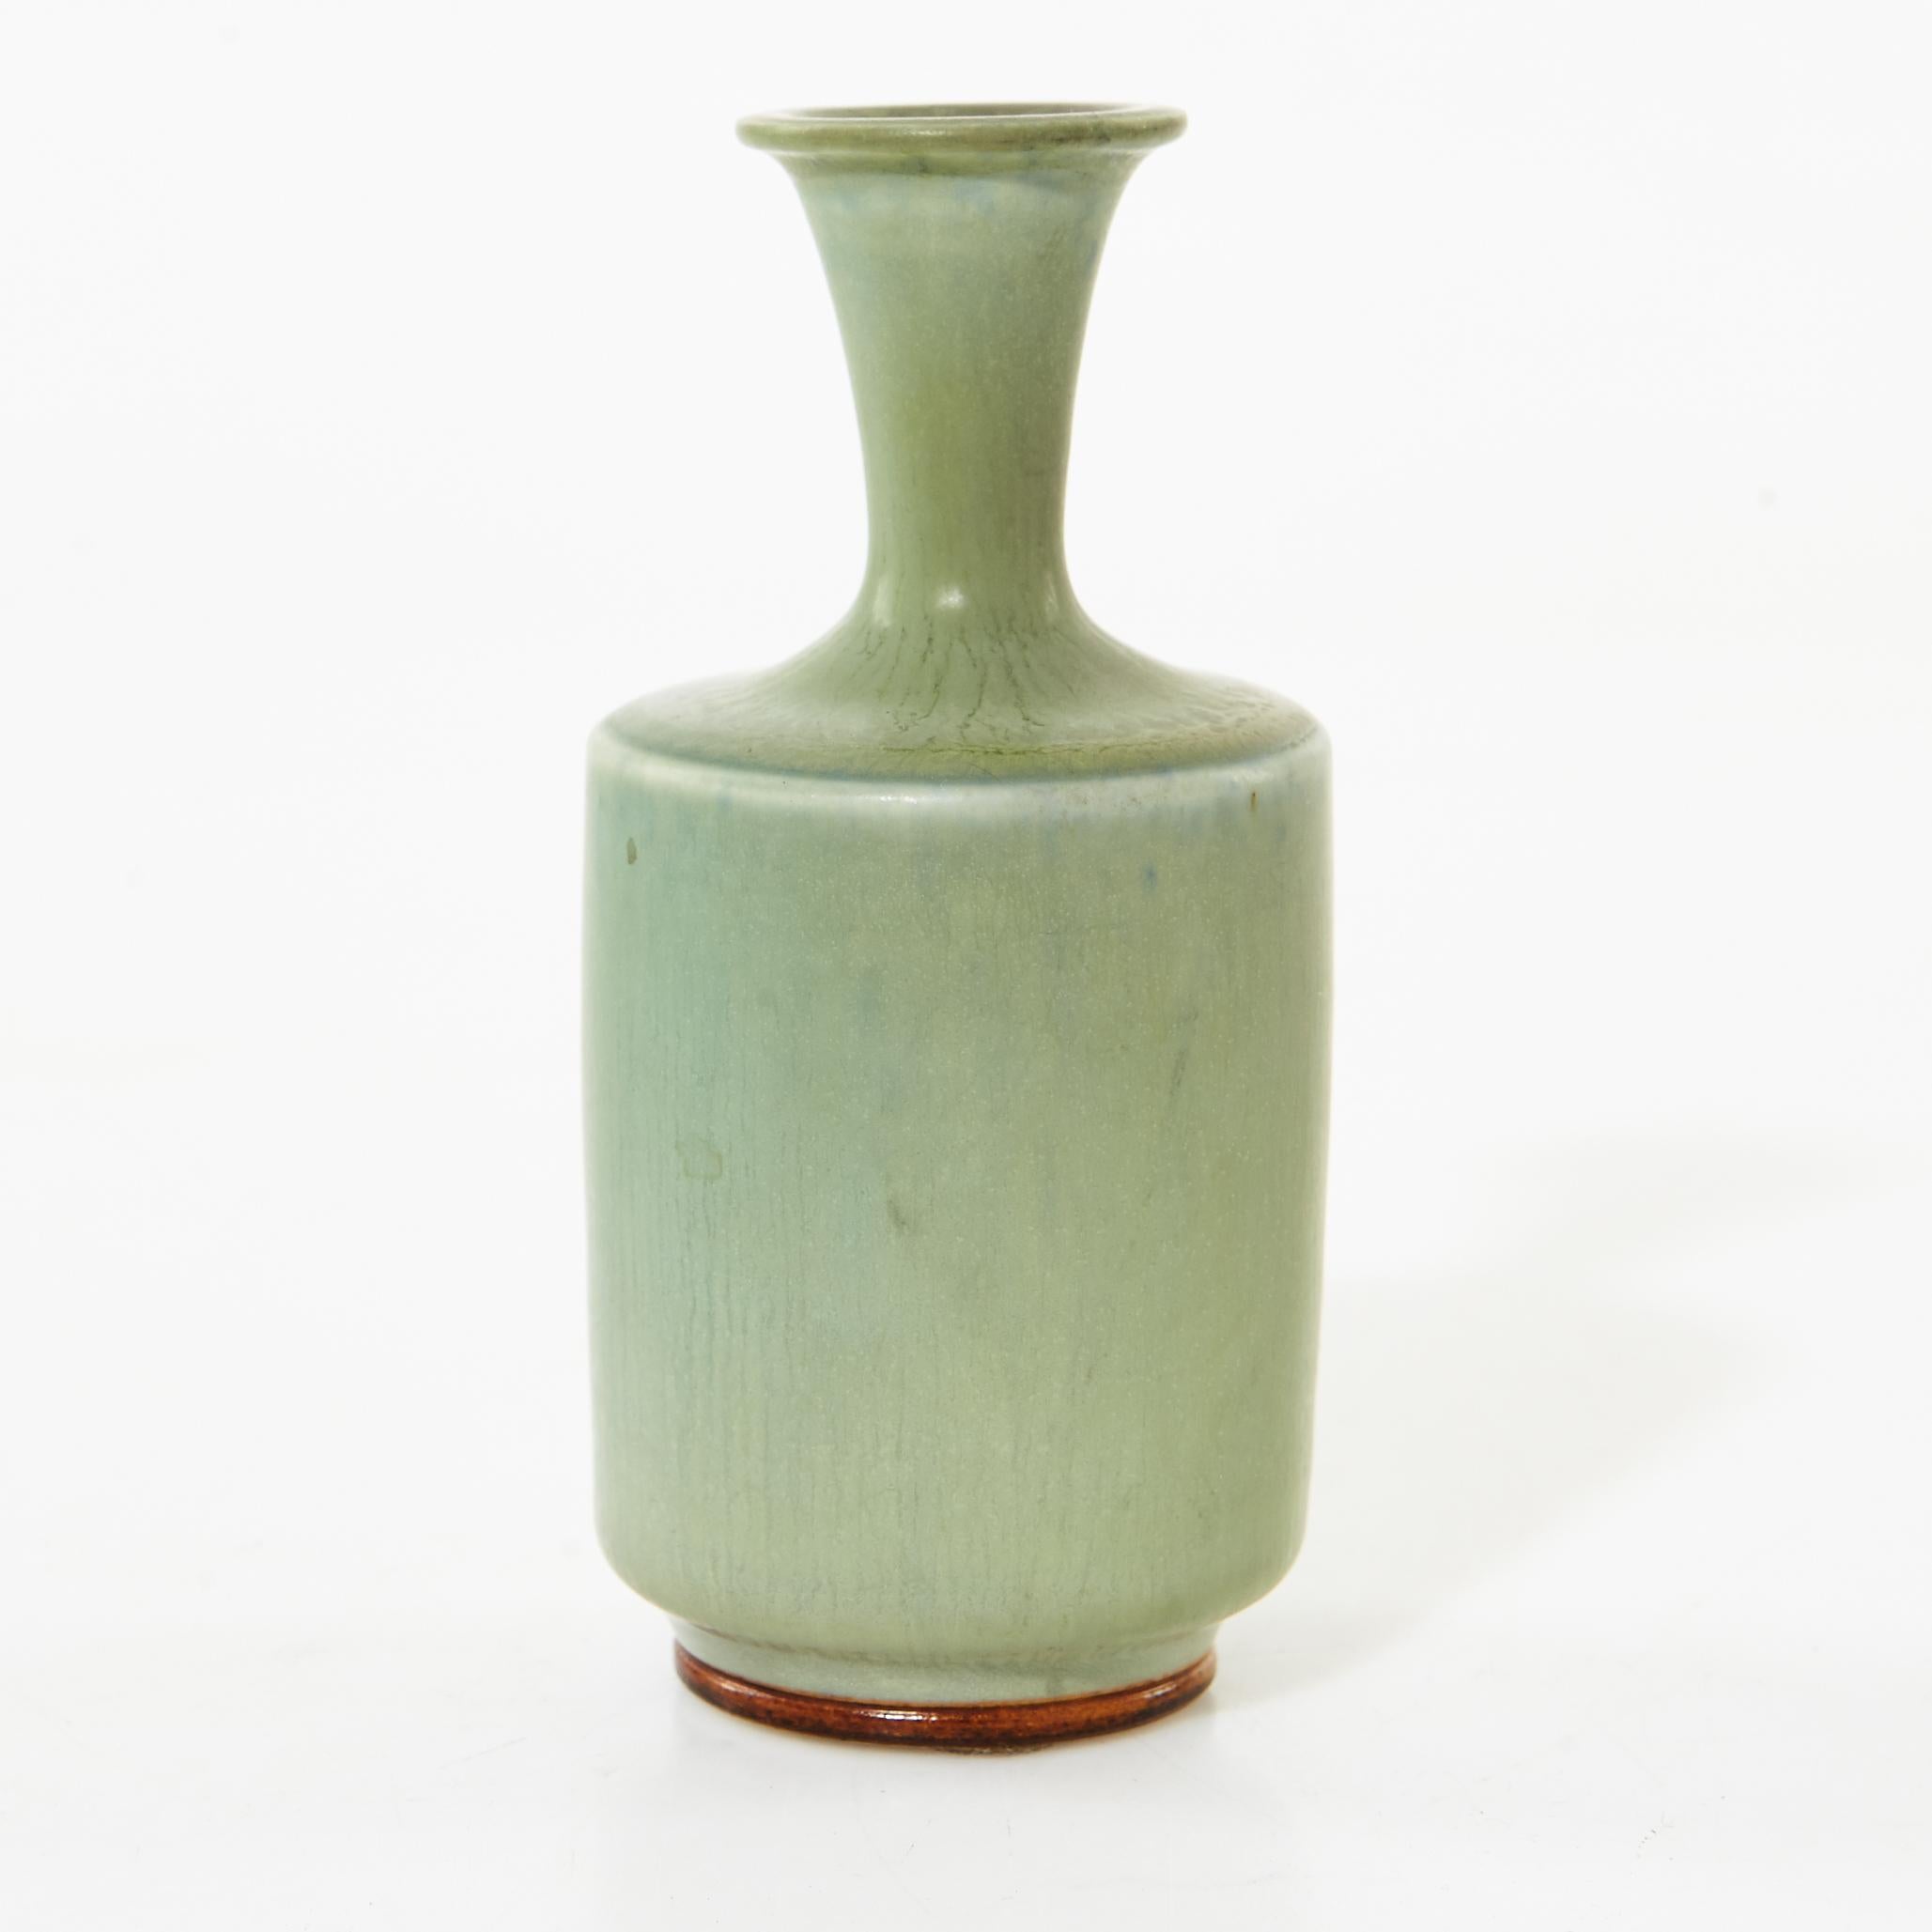 Berndt Friberg (1899-1981) ceramic Vase, modern Swedish design for Gustavsberg.
Green glaze
Signed and with incised marks. H 12 cm